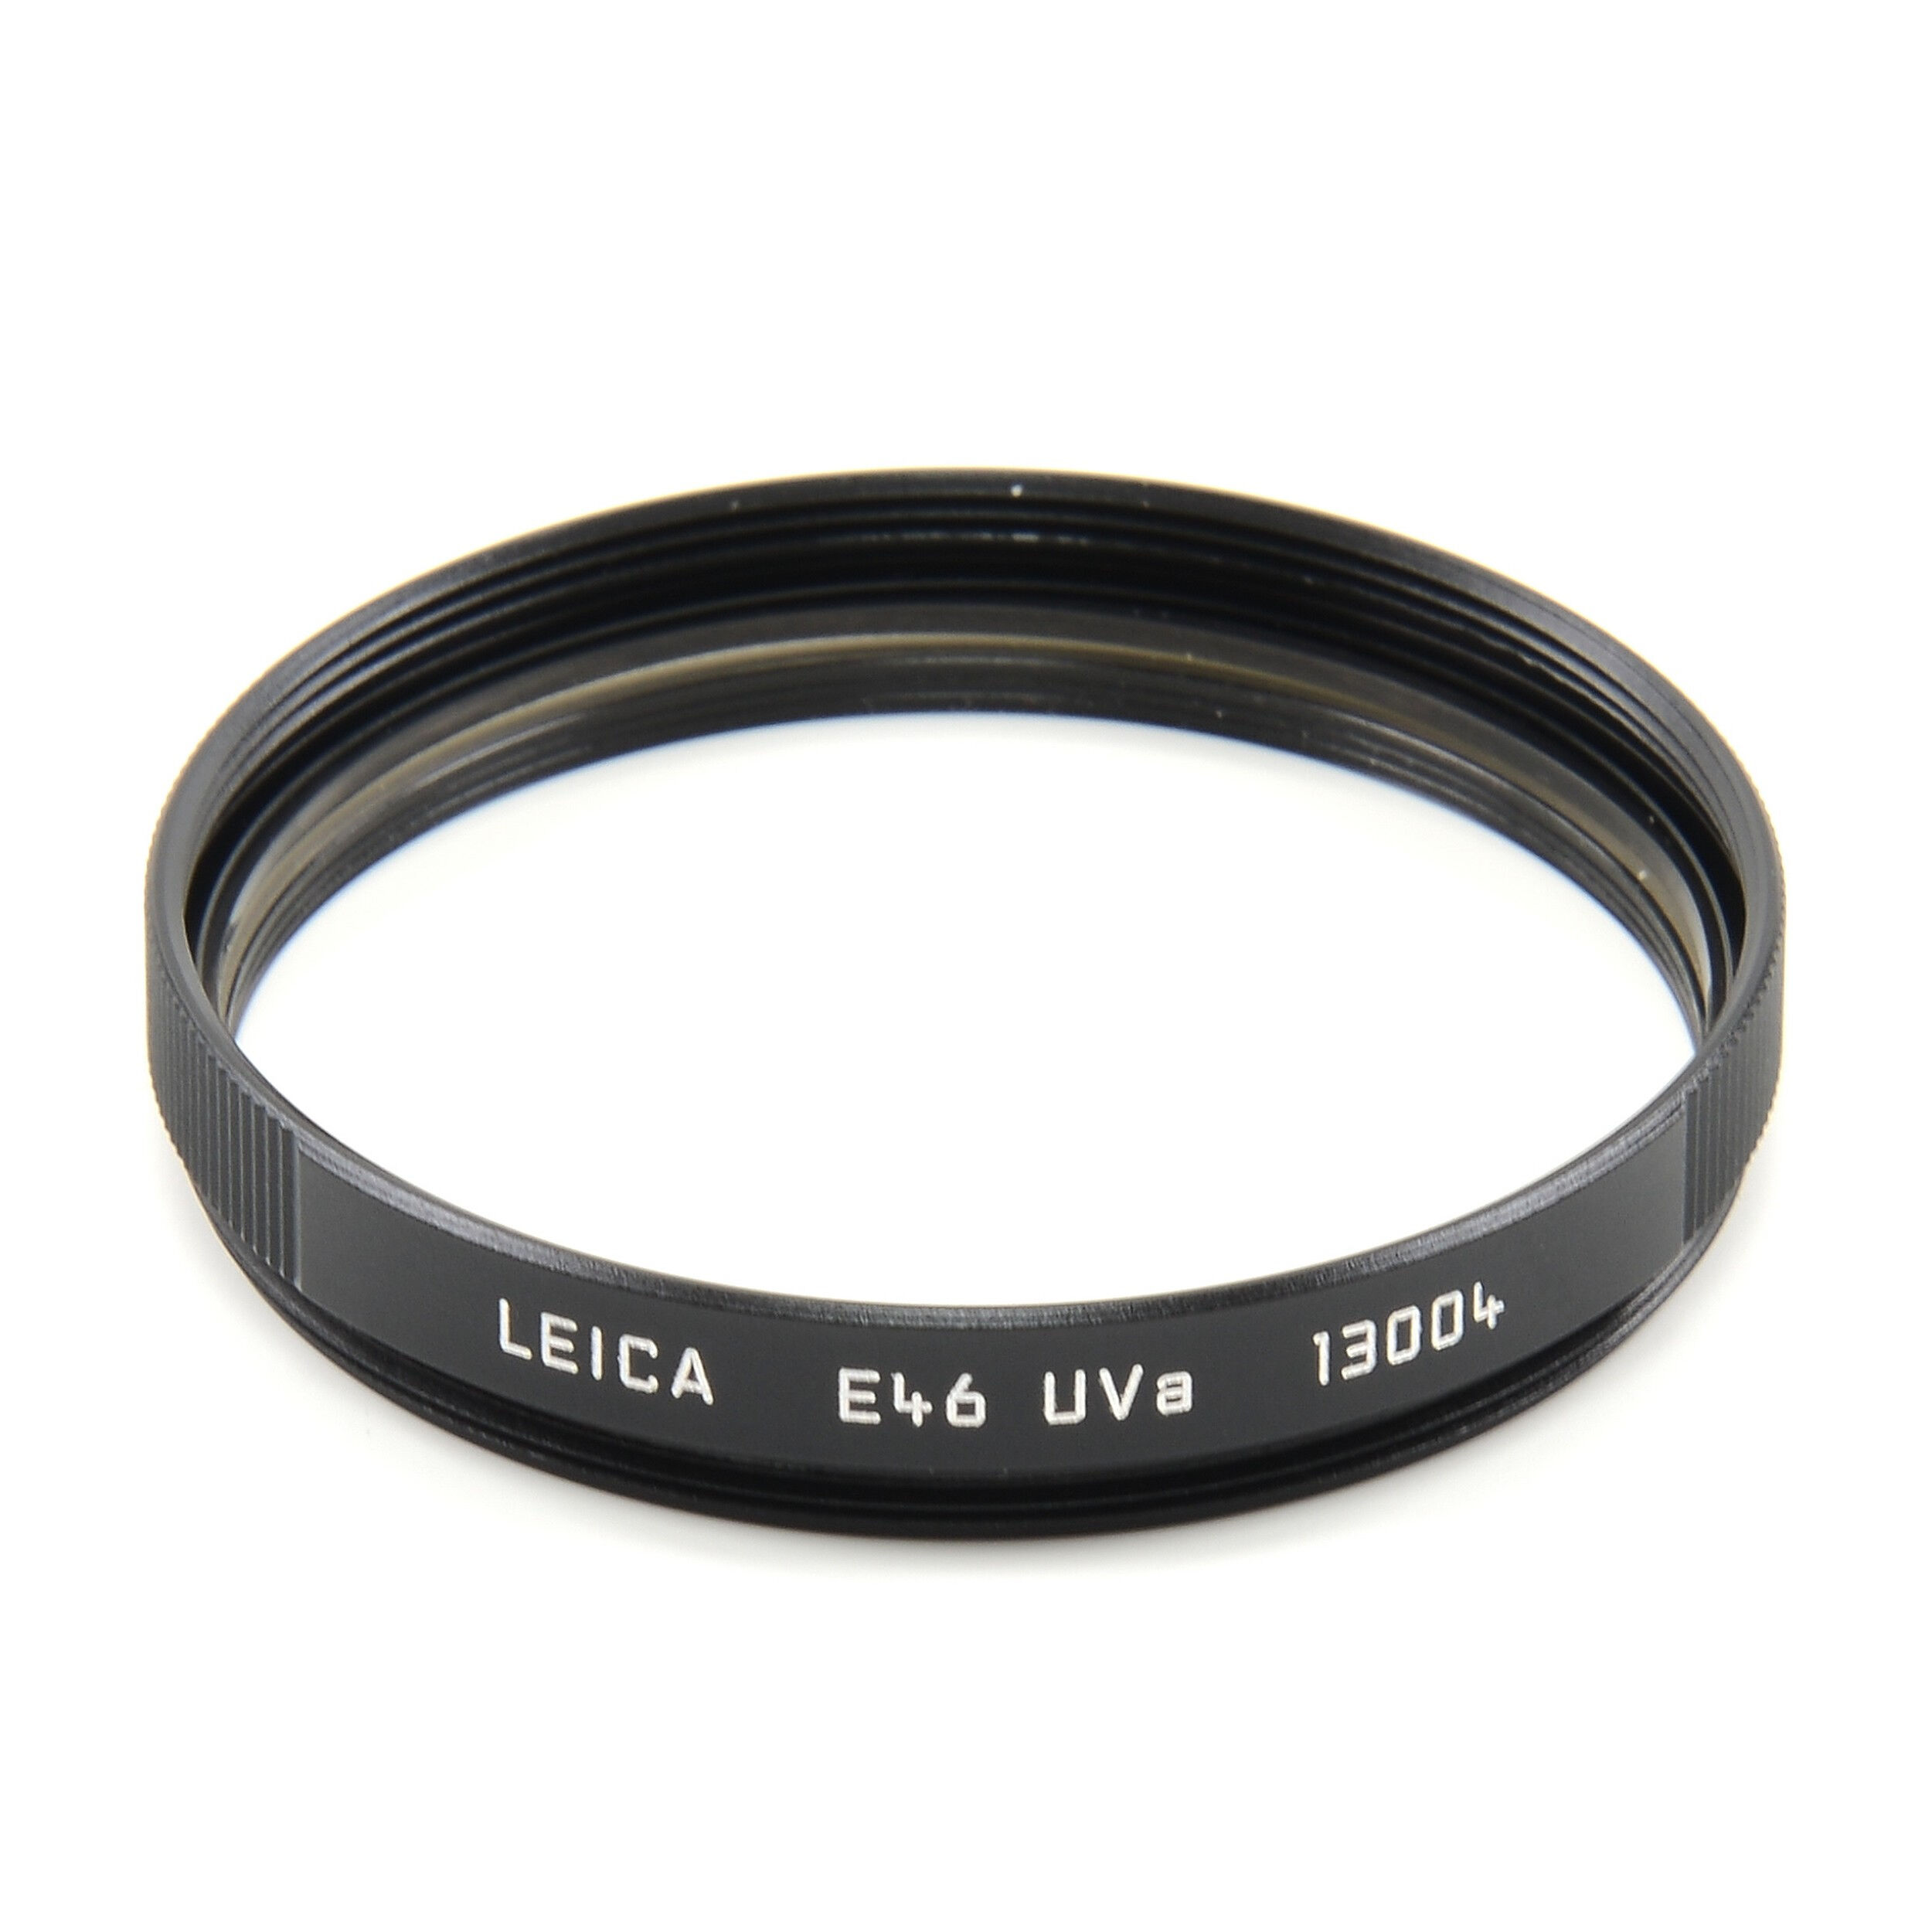 LEICA E46 UVA FILTER BLACK + BOX 13004 #4173